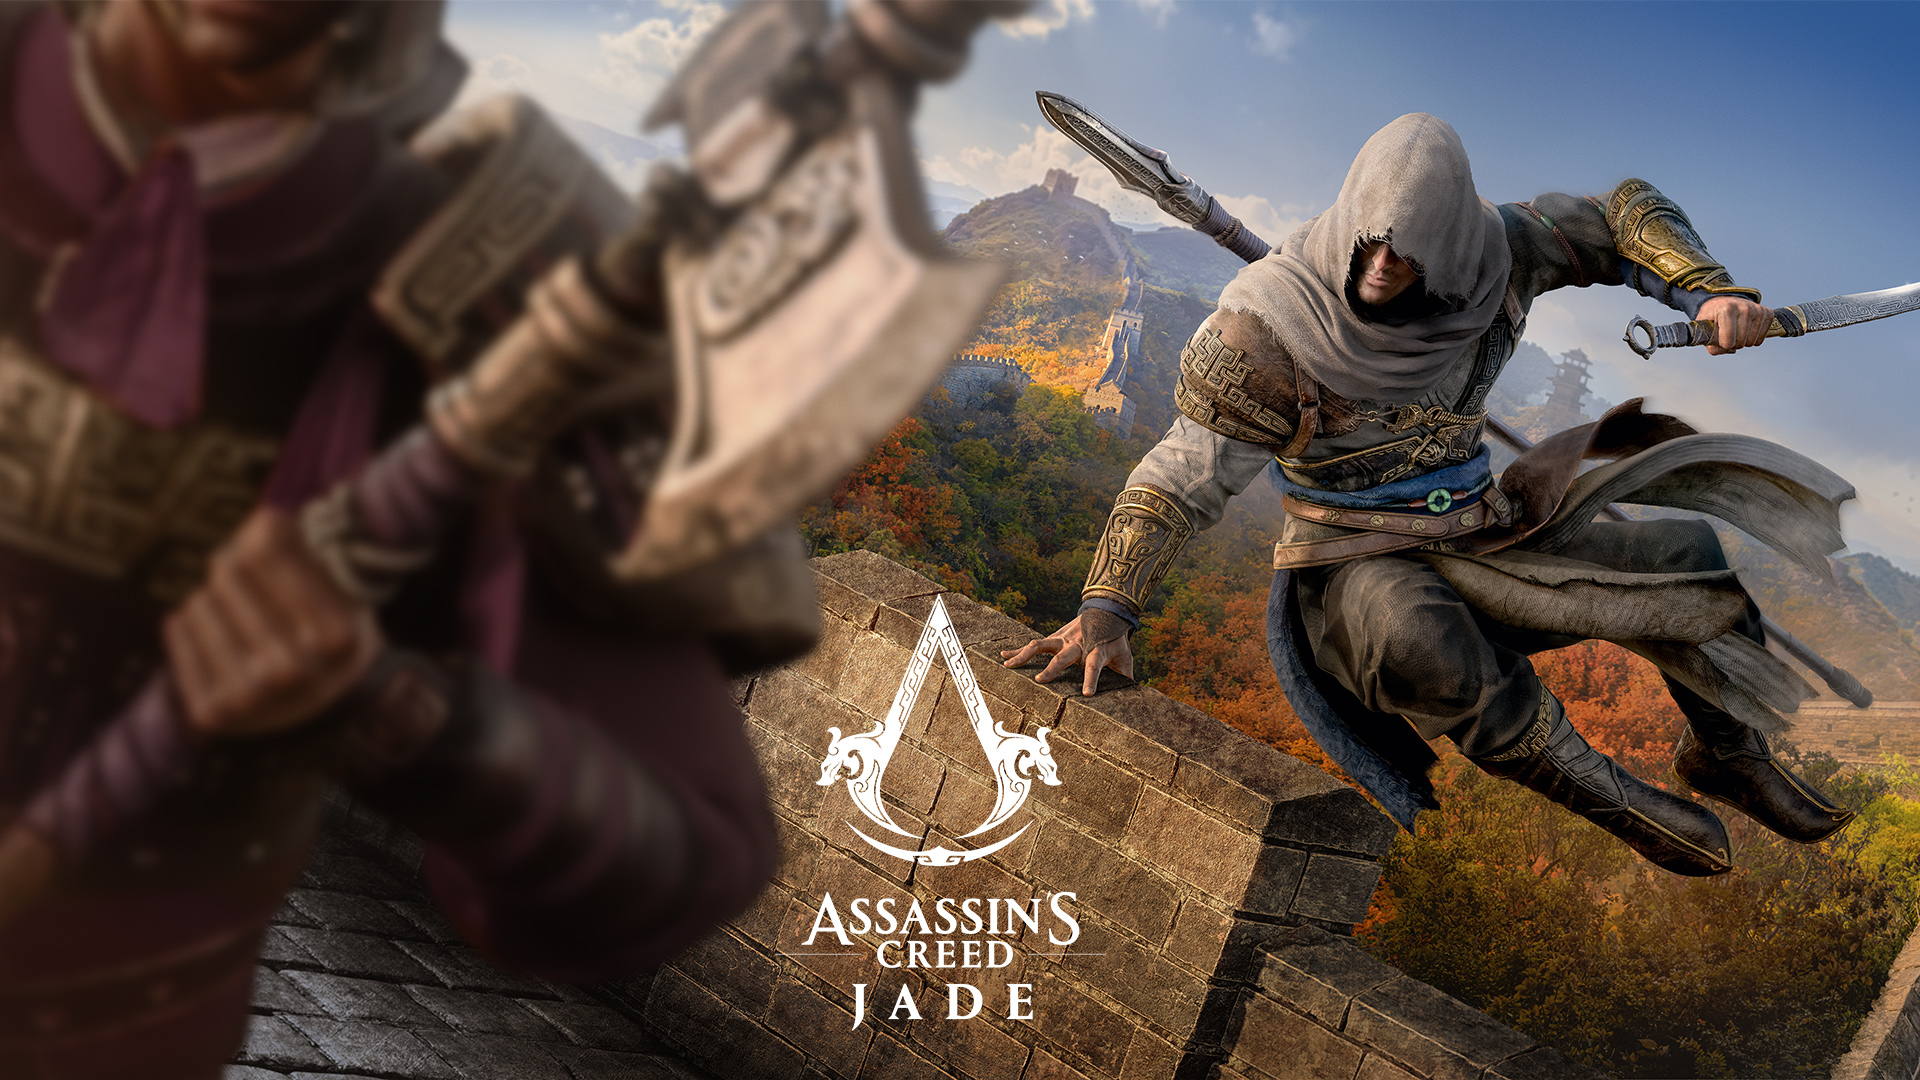 پخش تریلر جدید گیم پلی Assassin’s Creed Jade؛ تایید نام رسمی